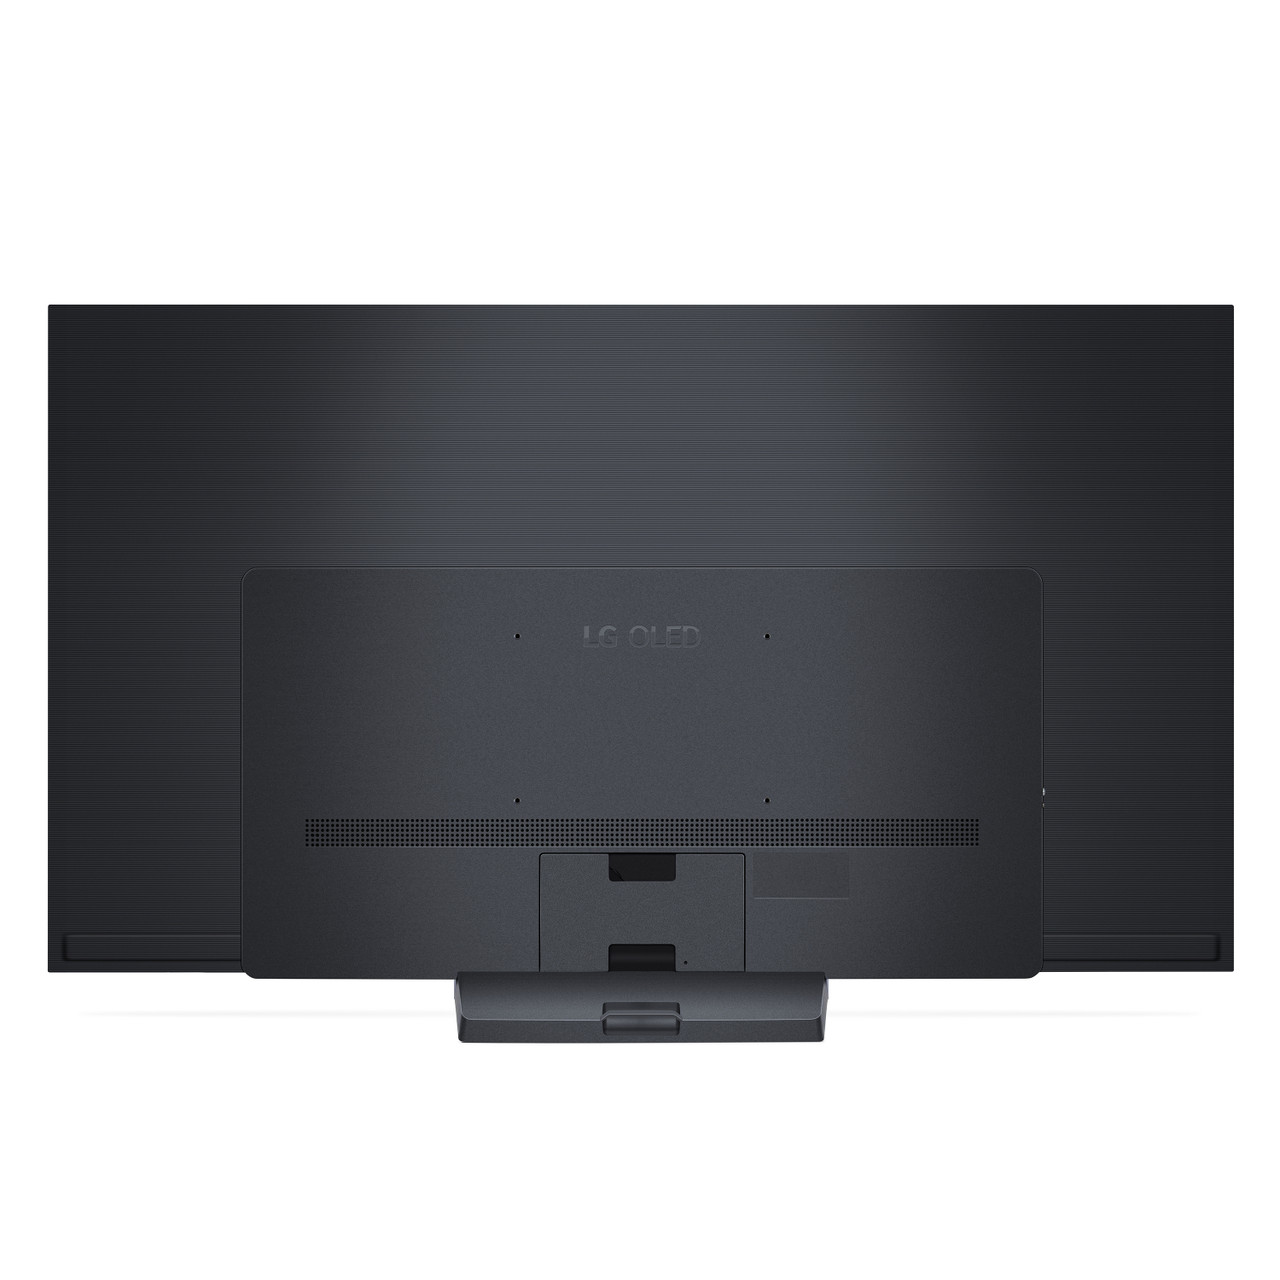 LG C3 65 4K HDR Smart OLED evo TV OLED65C3PUA B&H Photo Video